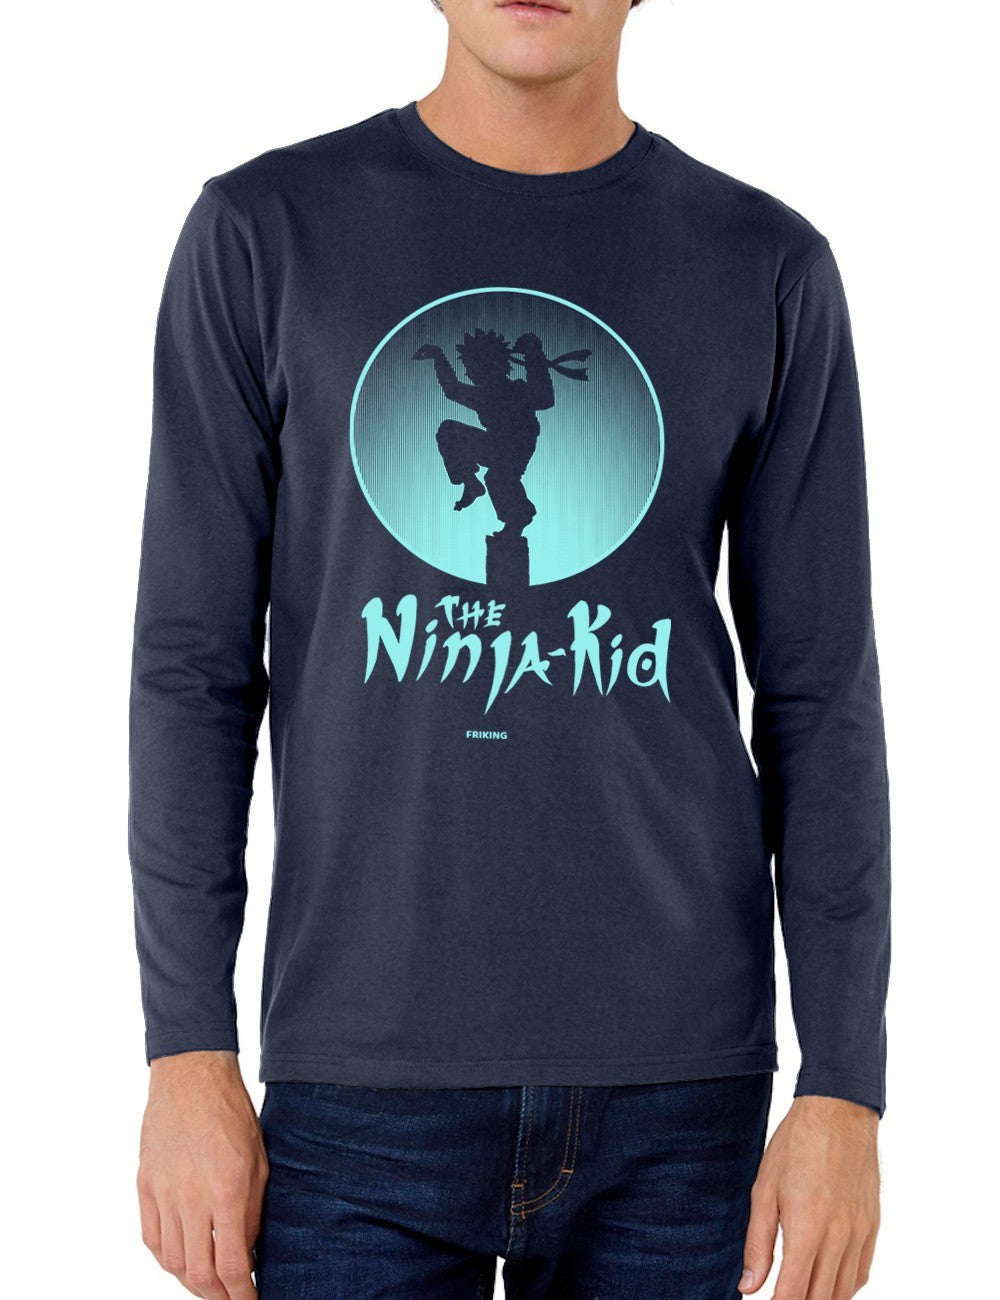  Ninja Kid 